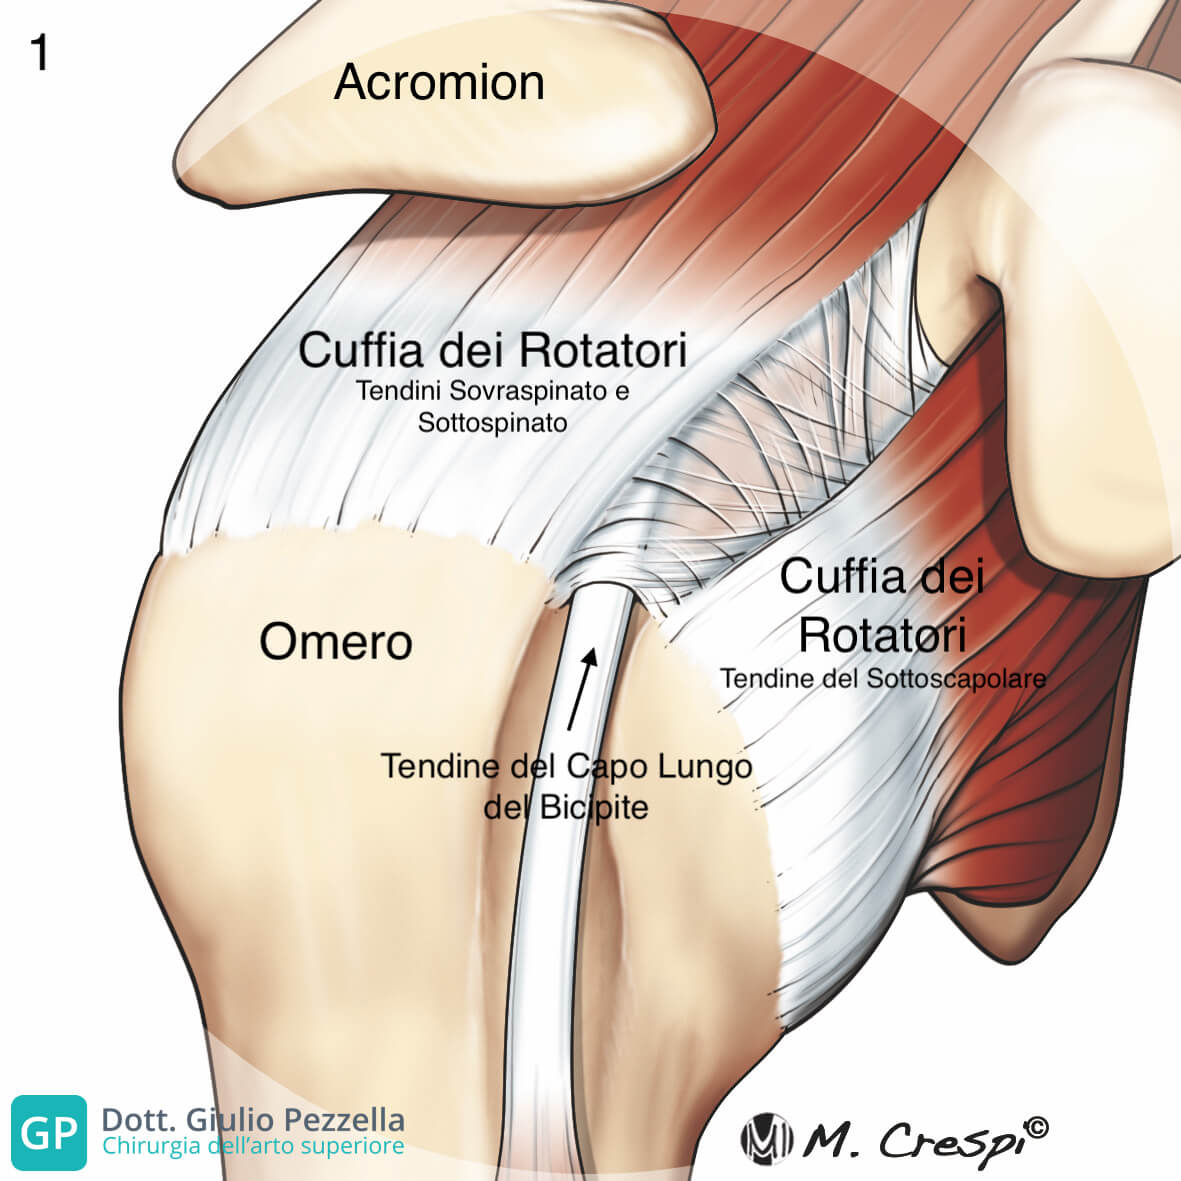 visione schematica di una spalla con i rapporti articolari della CDR con le strutture anatomiche circostanti